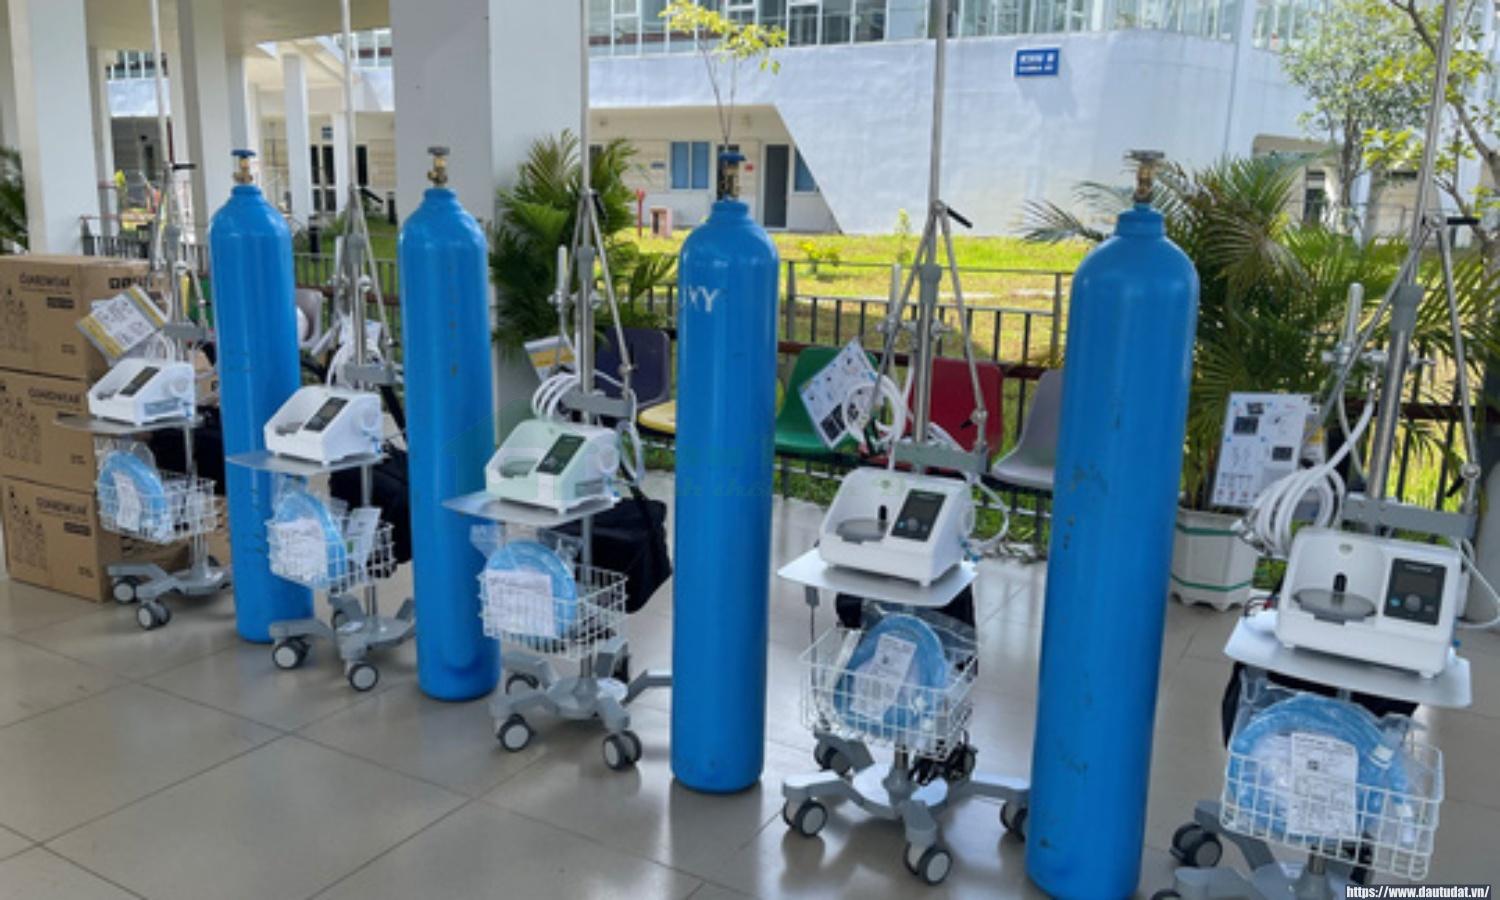 Quỹ Từ Thiện Kim Oanh Group hỗ trợ Bình Dương thêm 10 chiếc máy thở